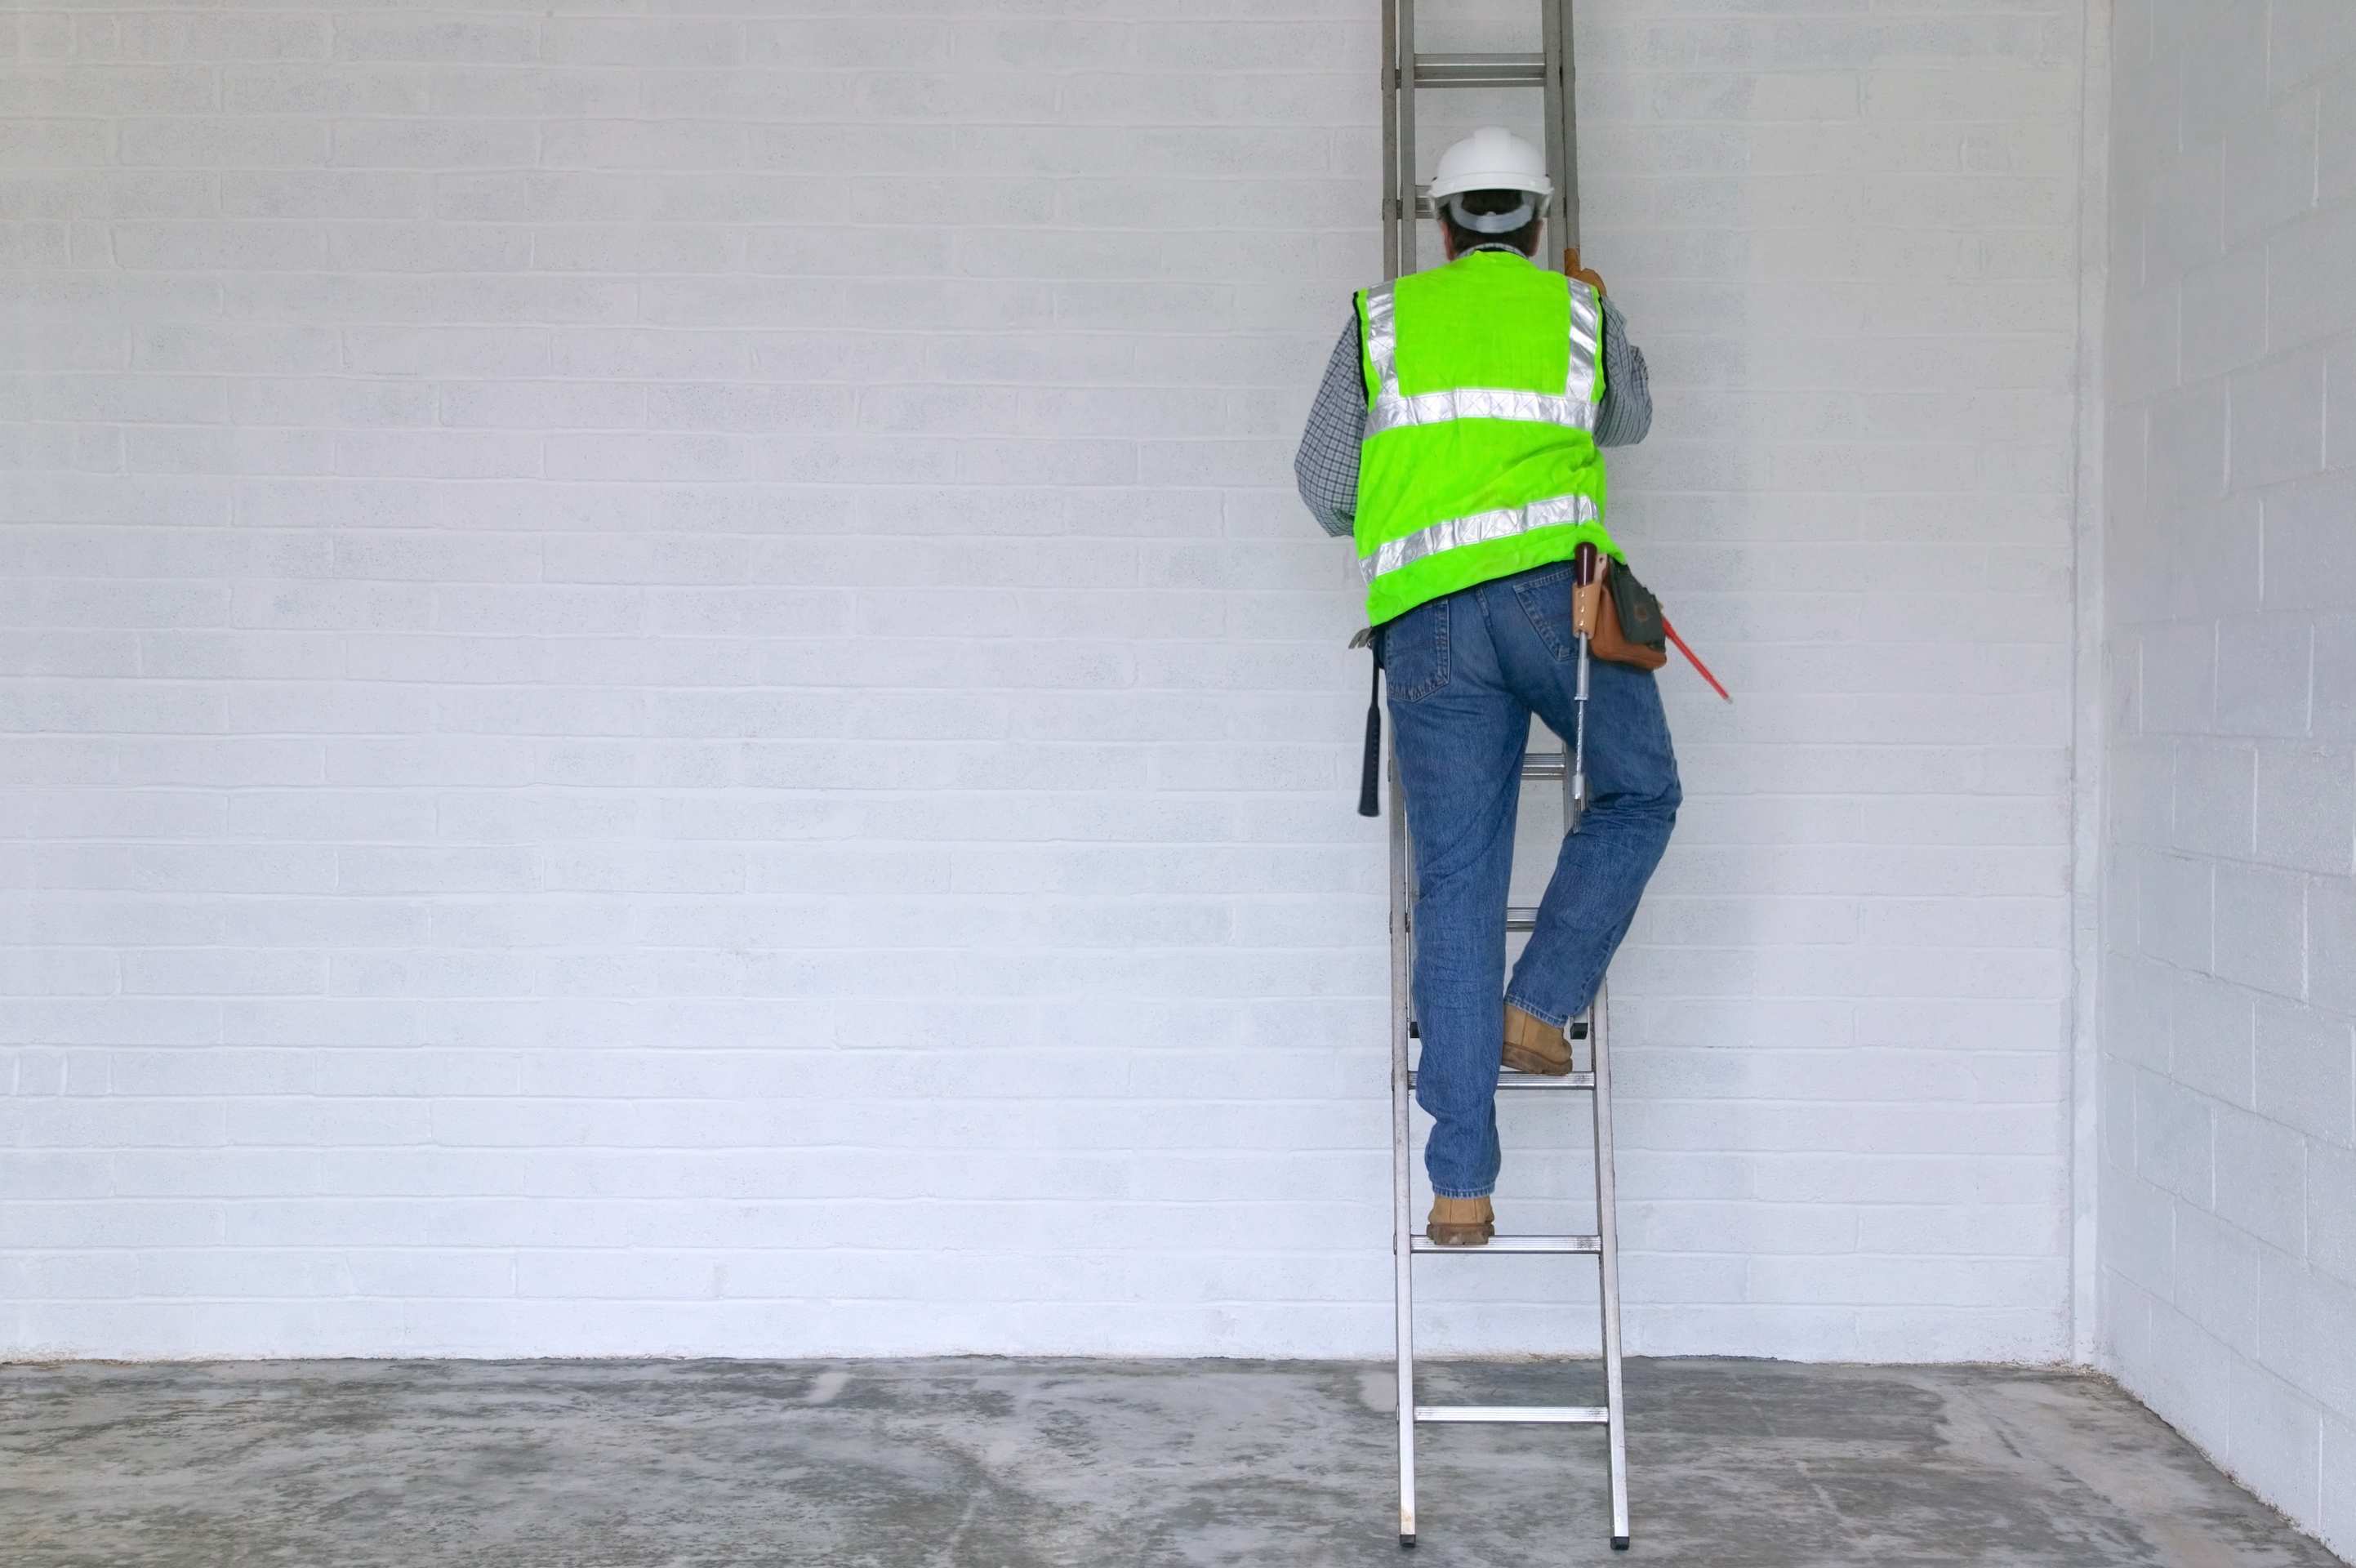 A construction employee climbing a ladder